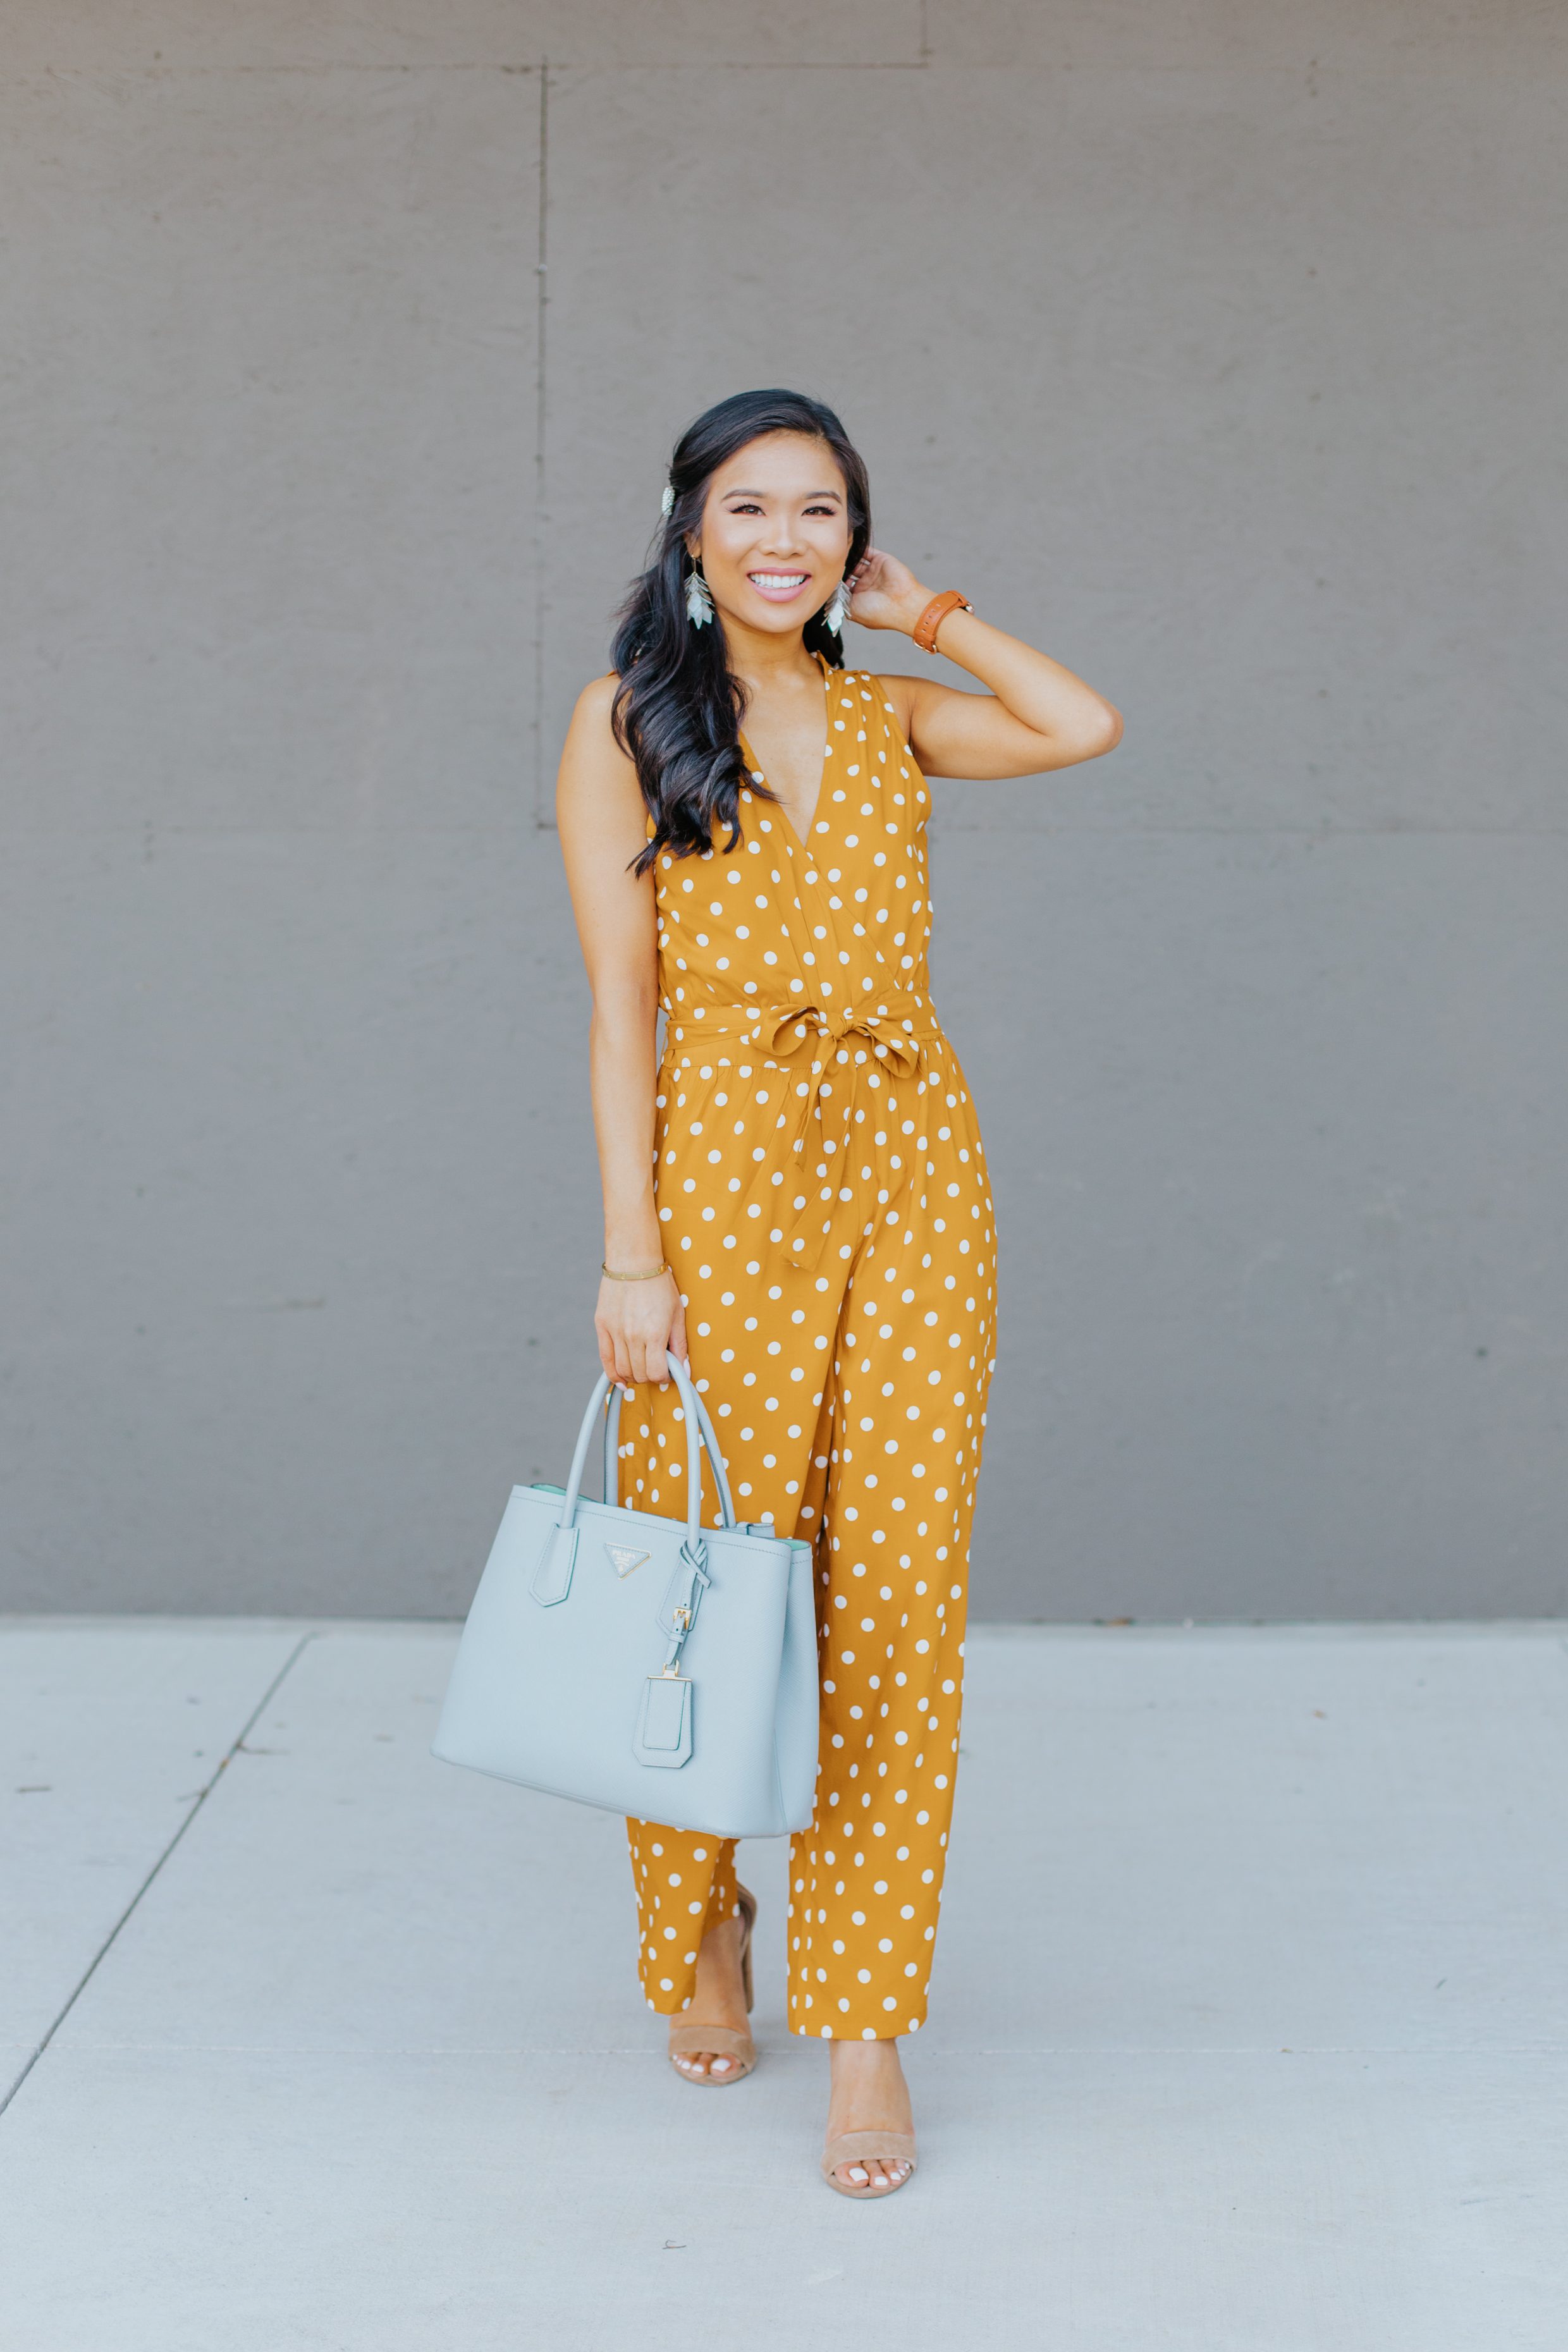 Petite brunette woman wears a polka dot jumpsuit